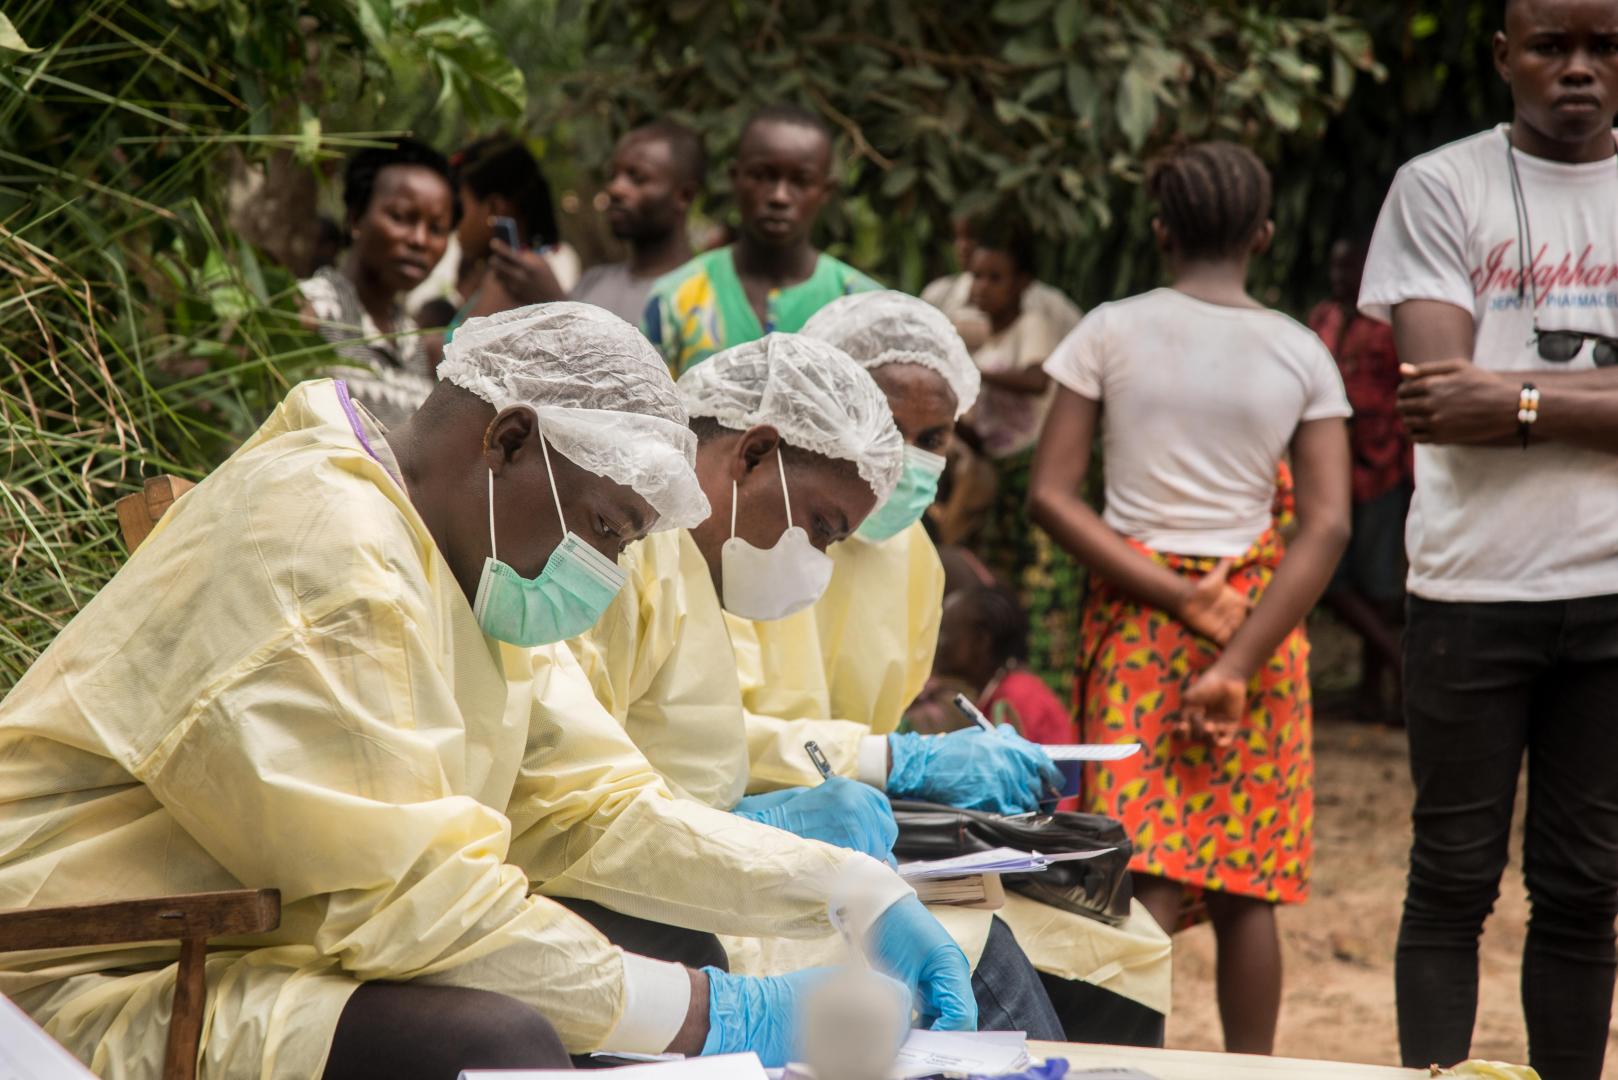 كان العاملون الطبيون يعدون ويعقمون منزلًا في موتو ، بيكورو ، مقاطعة إكواتور ، بجمهورية الكونغو الديمقراطية ، بعد اكتشاف حالة إصابة مؤكدة بفيروس إيبولا.